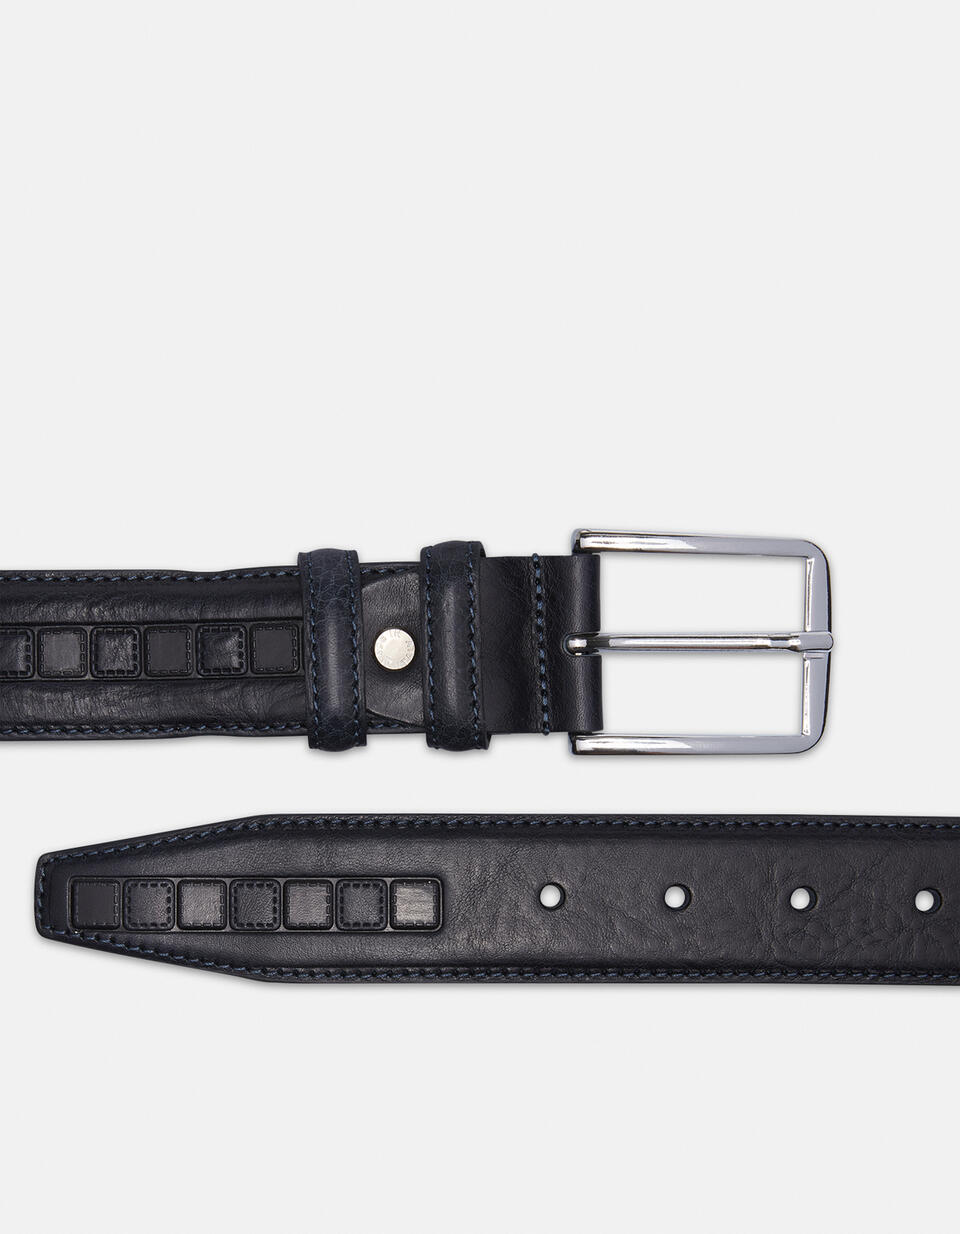 Belt leather working height 3.5 cm. - Men Belts | Belts BLU - Men Belts | BeltsCuoieria Fiorentina